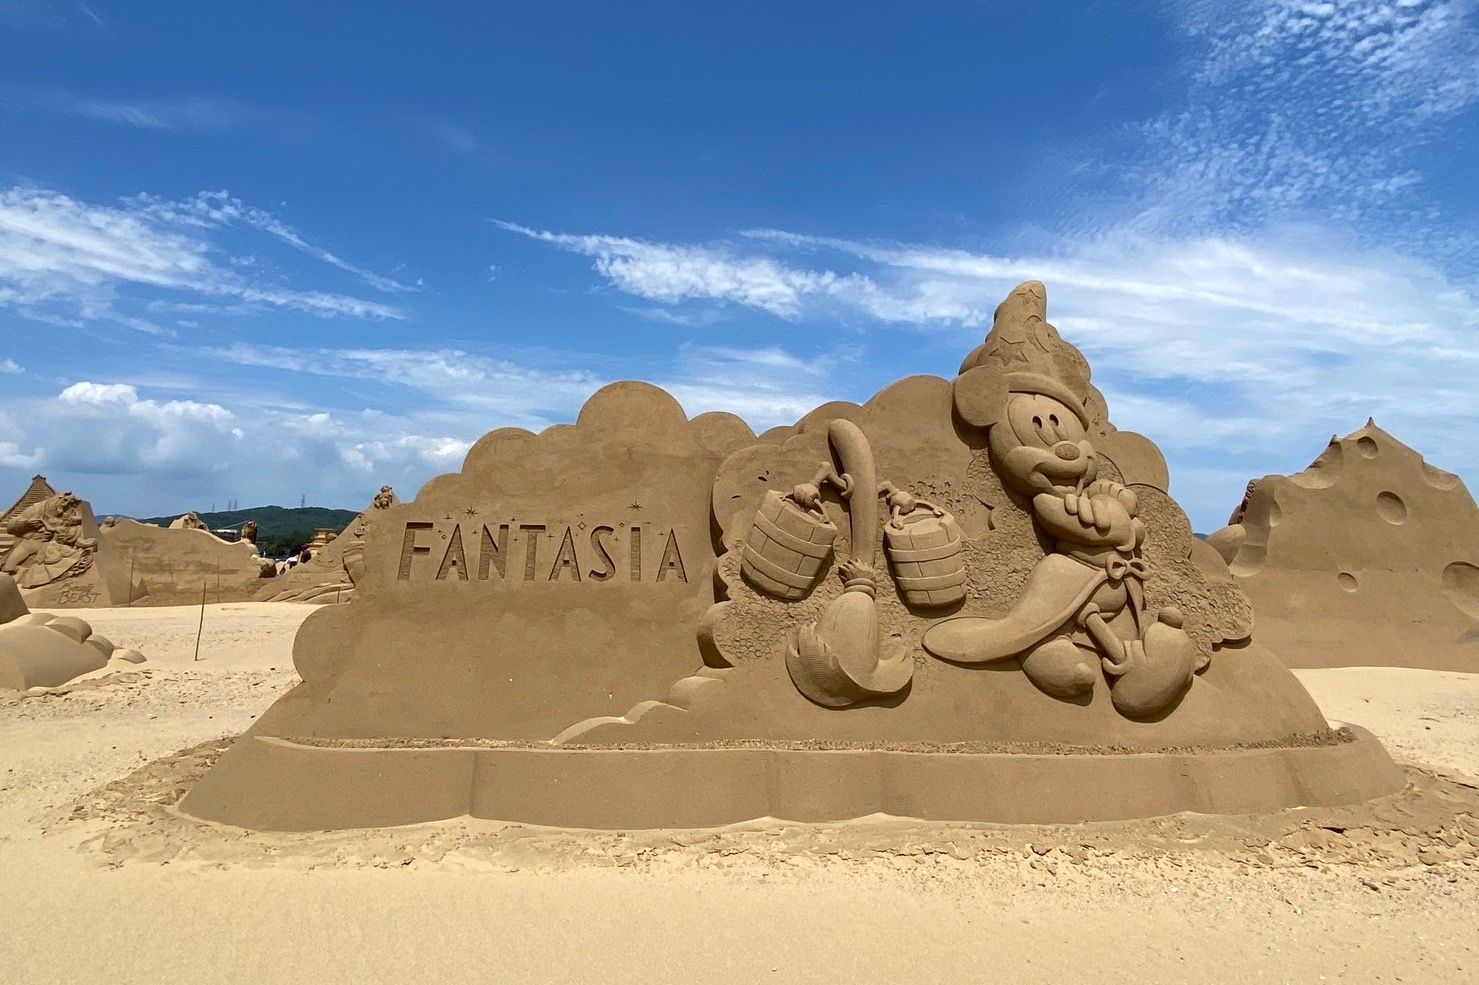 Disney Sand Sculptures at Taiwan's Fulong Beach